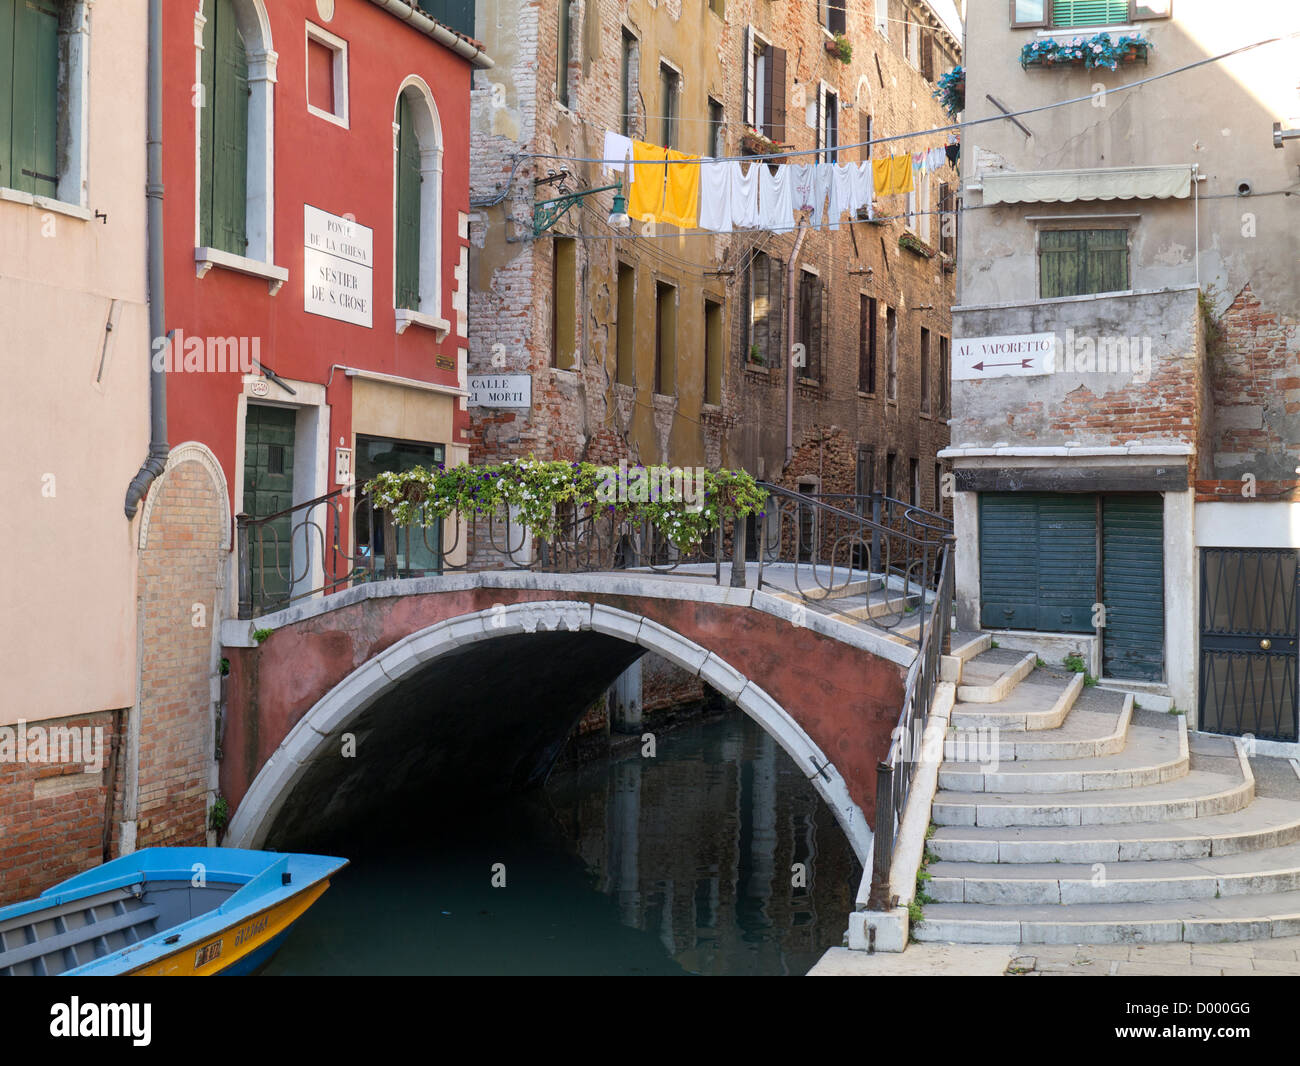 Italien, Venedig, Ponte De La Chiesa: hübsche Brücke mit Schritten, hängende Wäsche und Al Vaporetto Zeichen Stockfoto